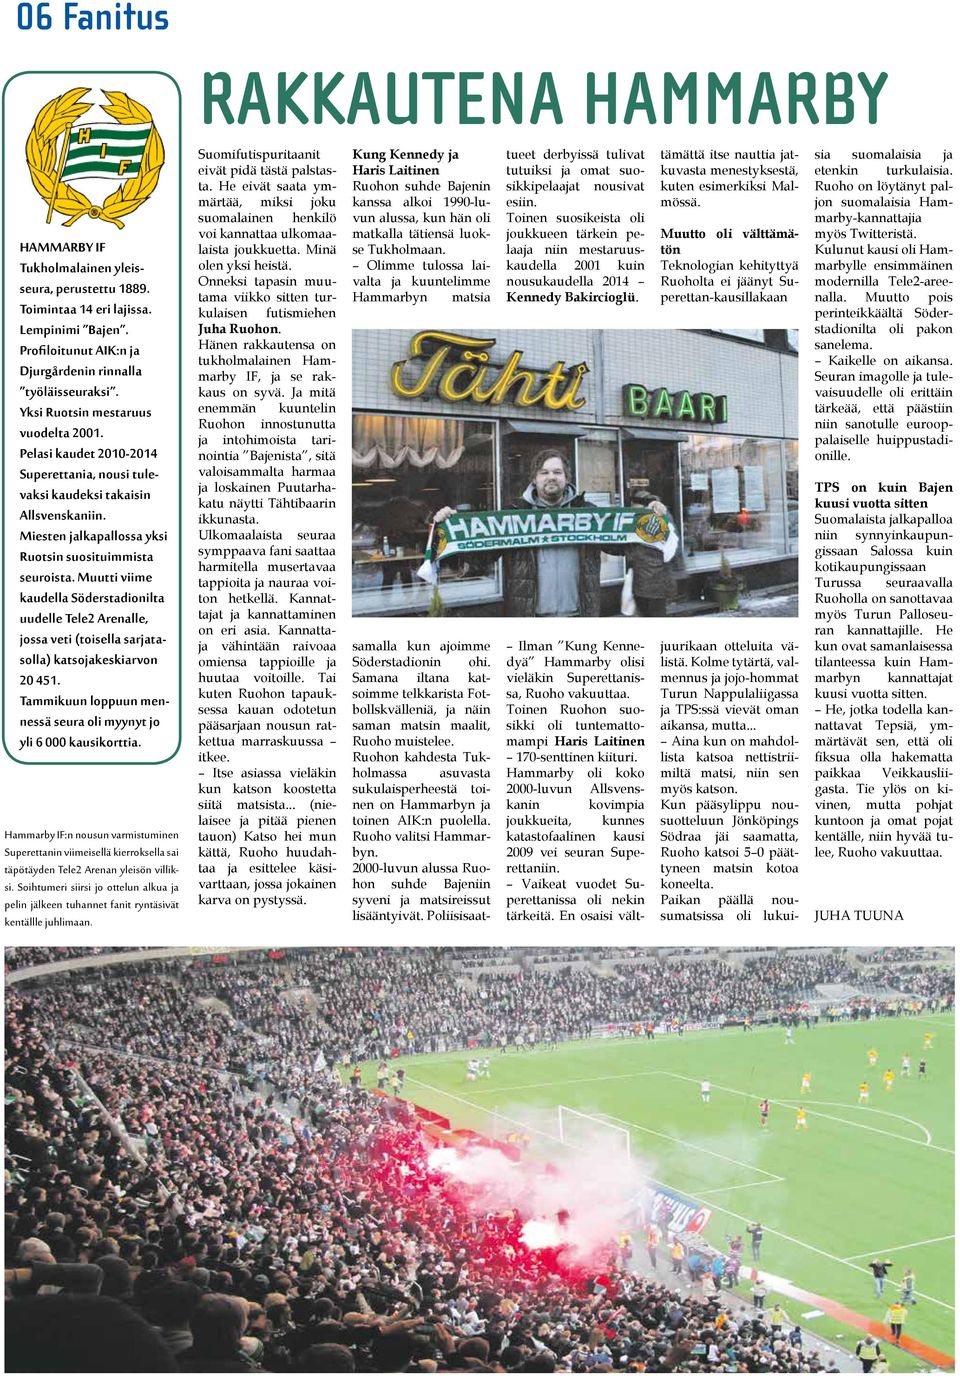 Muutti viime kaudella Söderstadionilta uudelle Tele2 Arenalle, jossa veti (toisella sarjatasolla) katsojakeskiarvon 20 451. Tammikuun loppuun mennessä seura oli myynyt jo yli 6 000 kausikorttia.